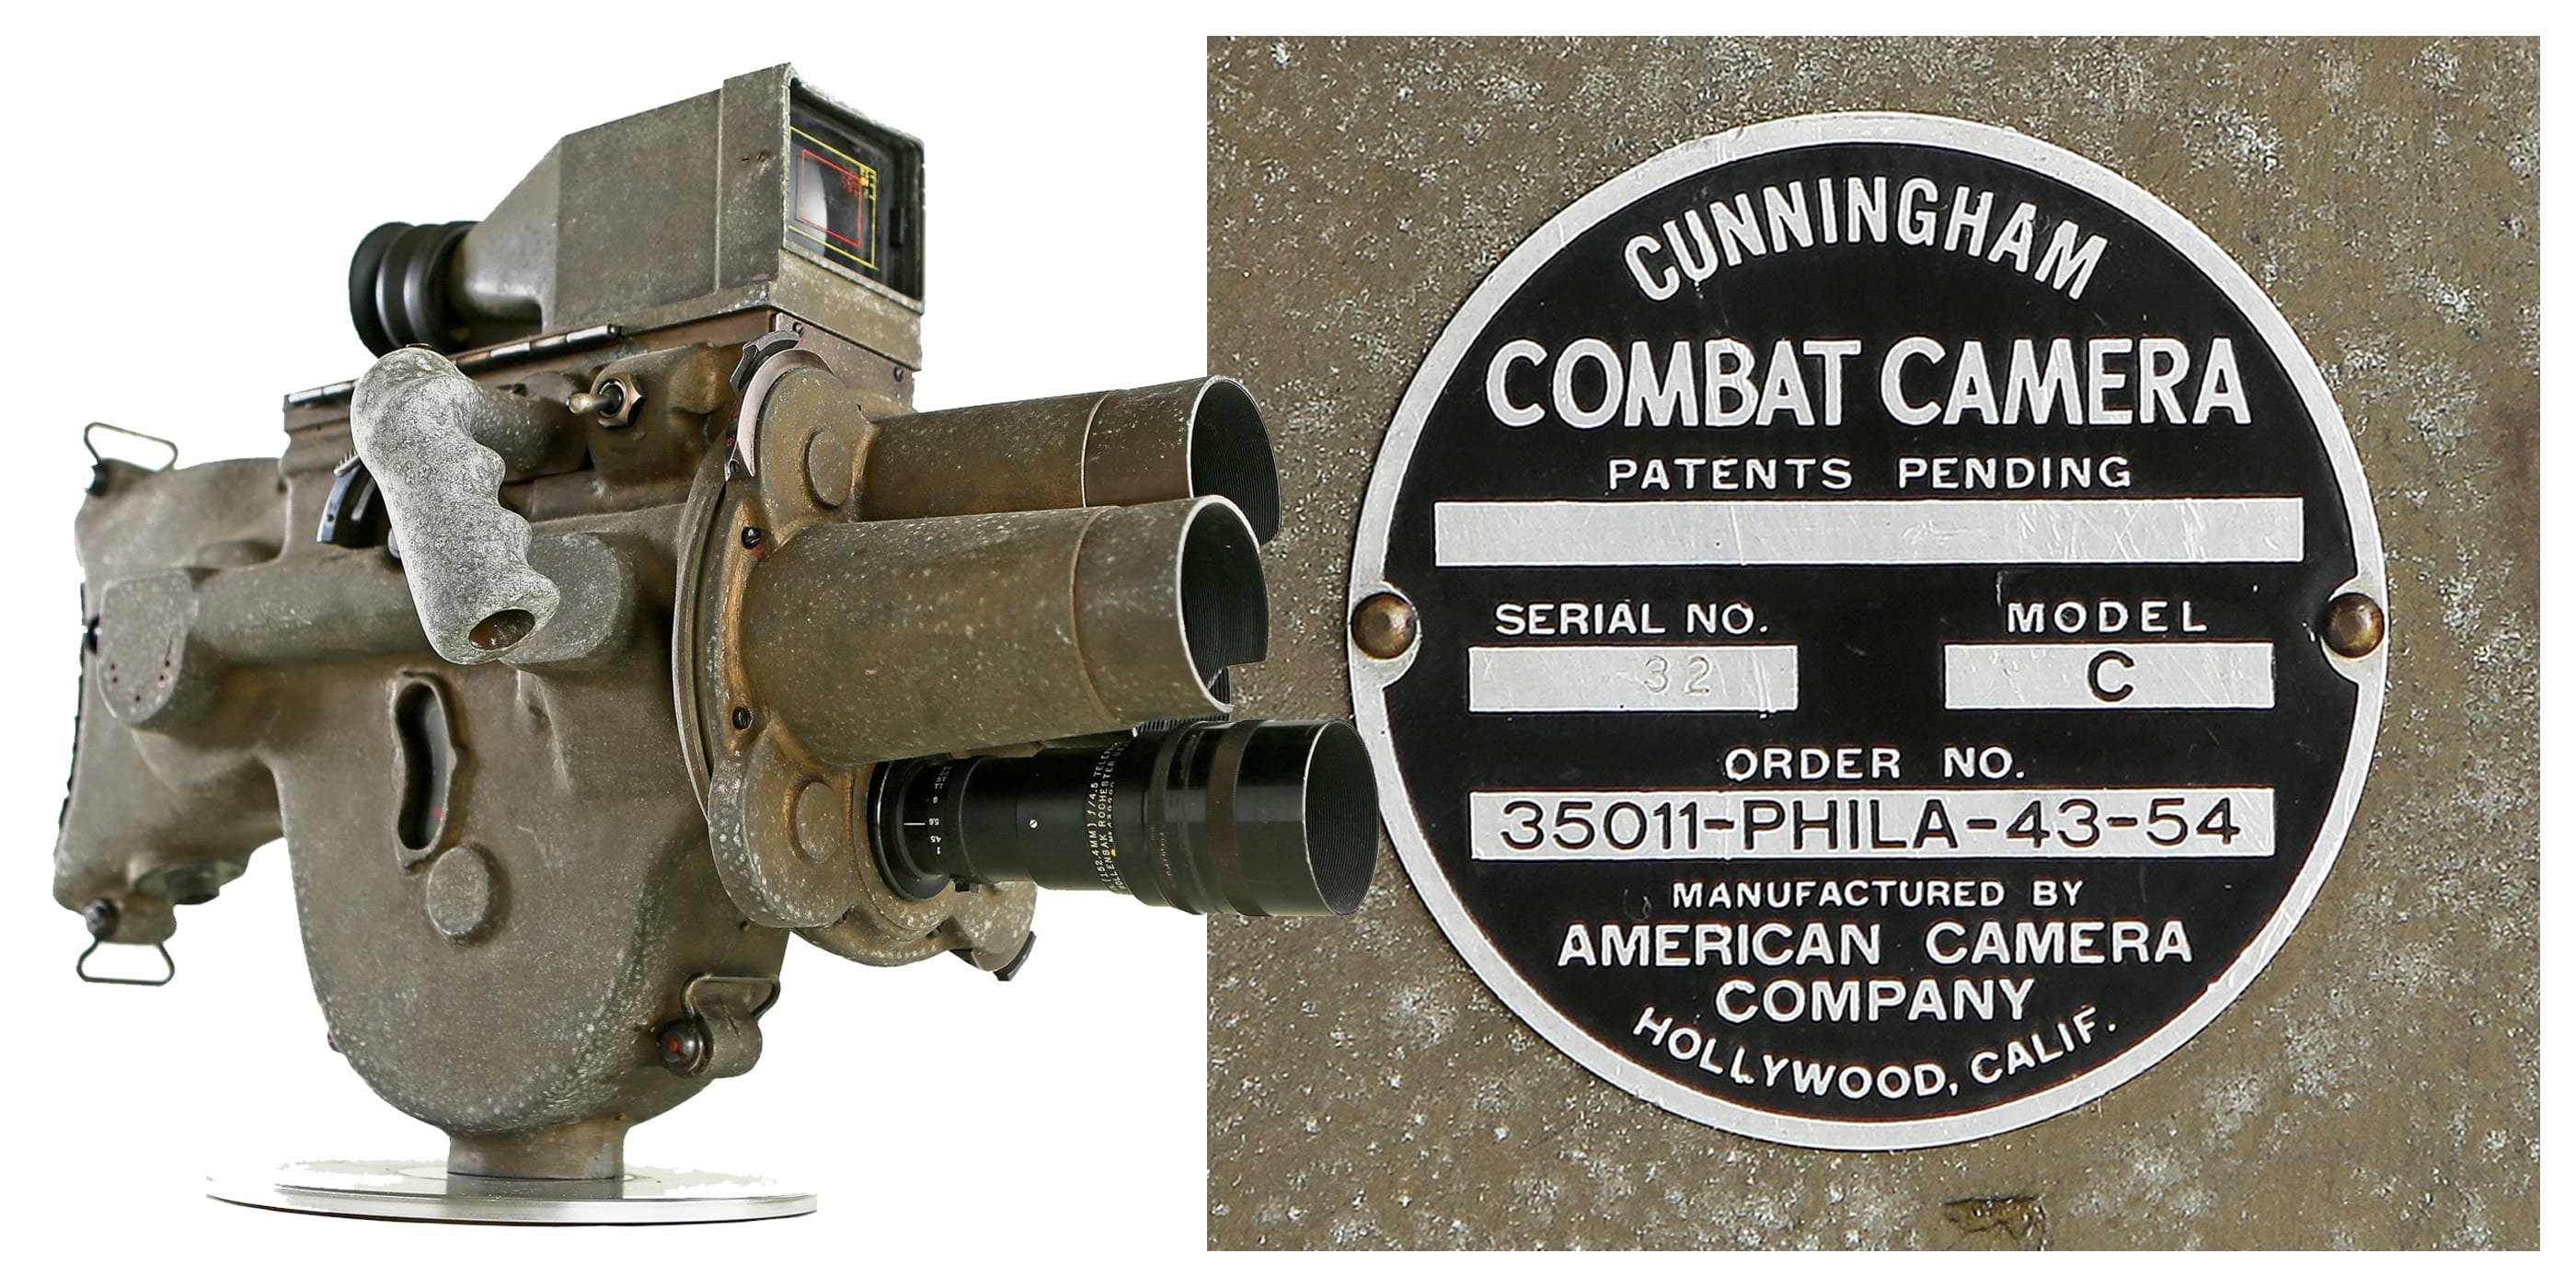 Cunningham Combat Camera Featured Image